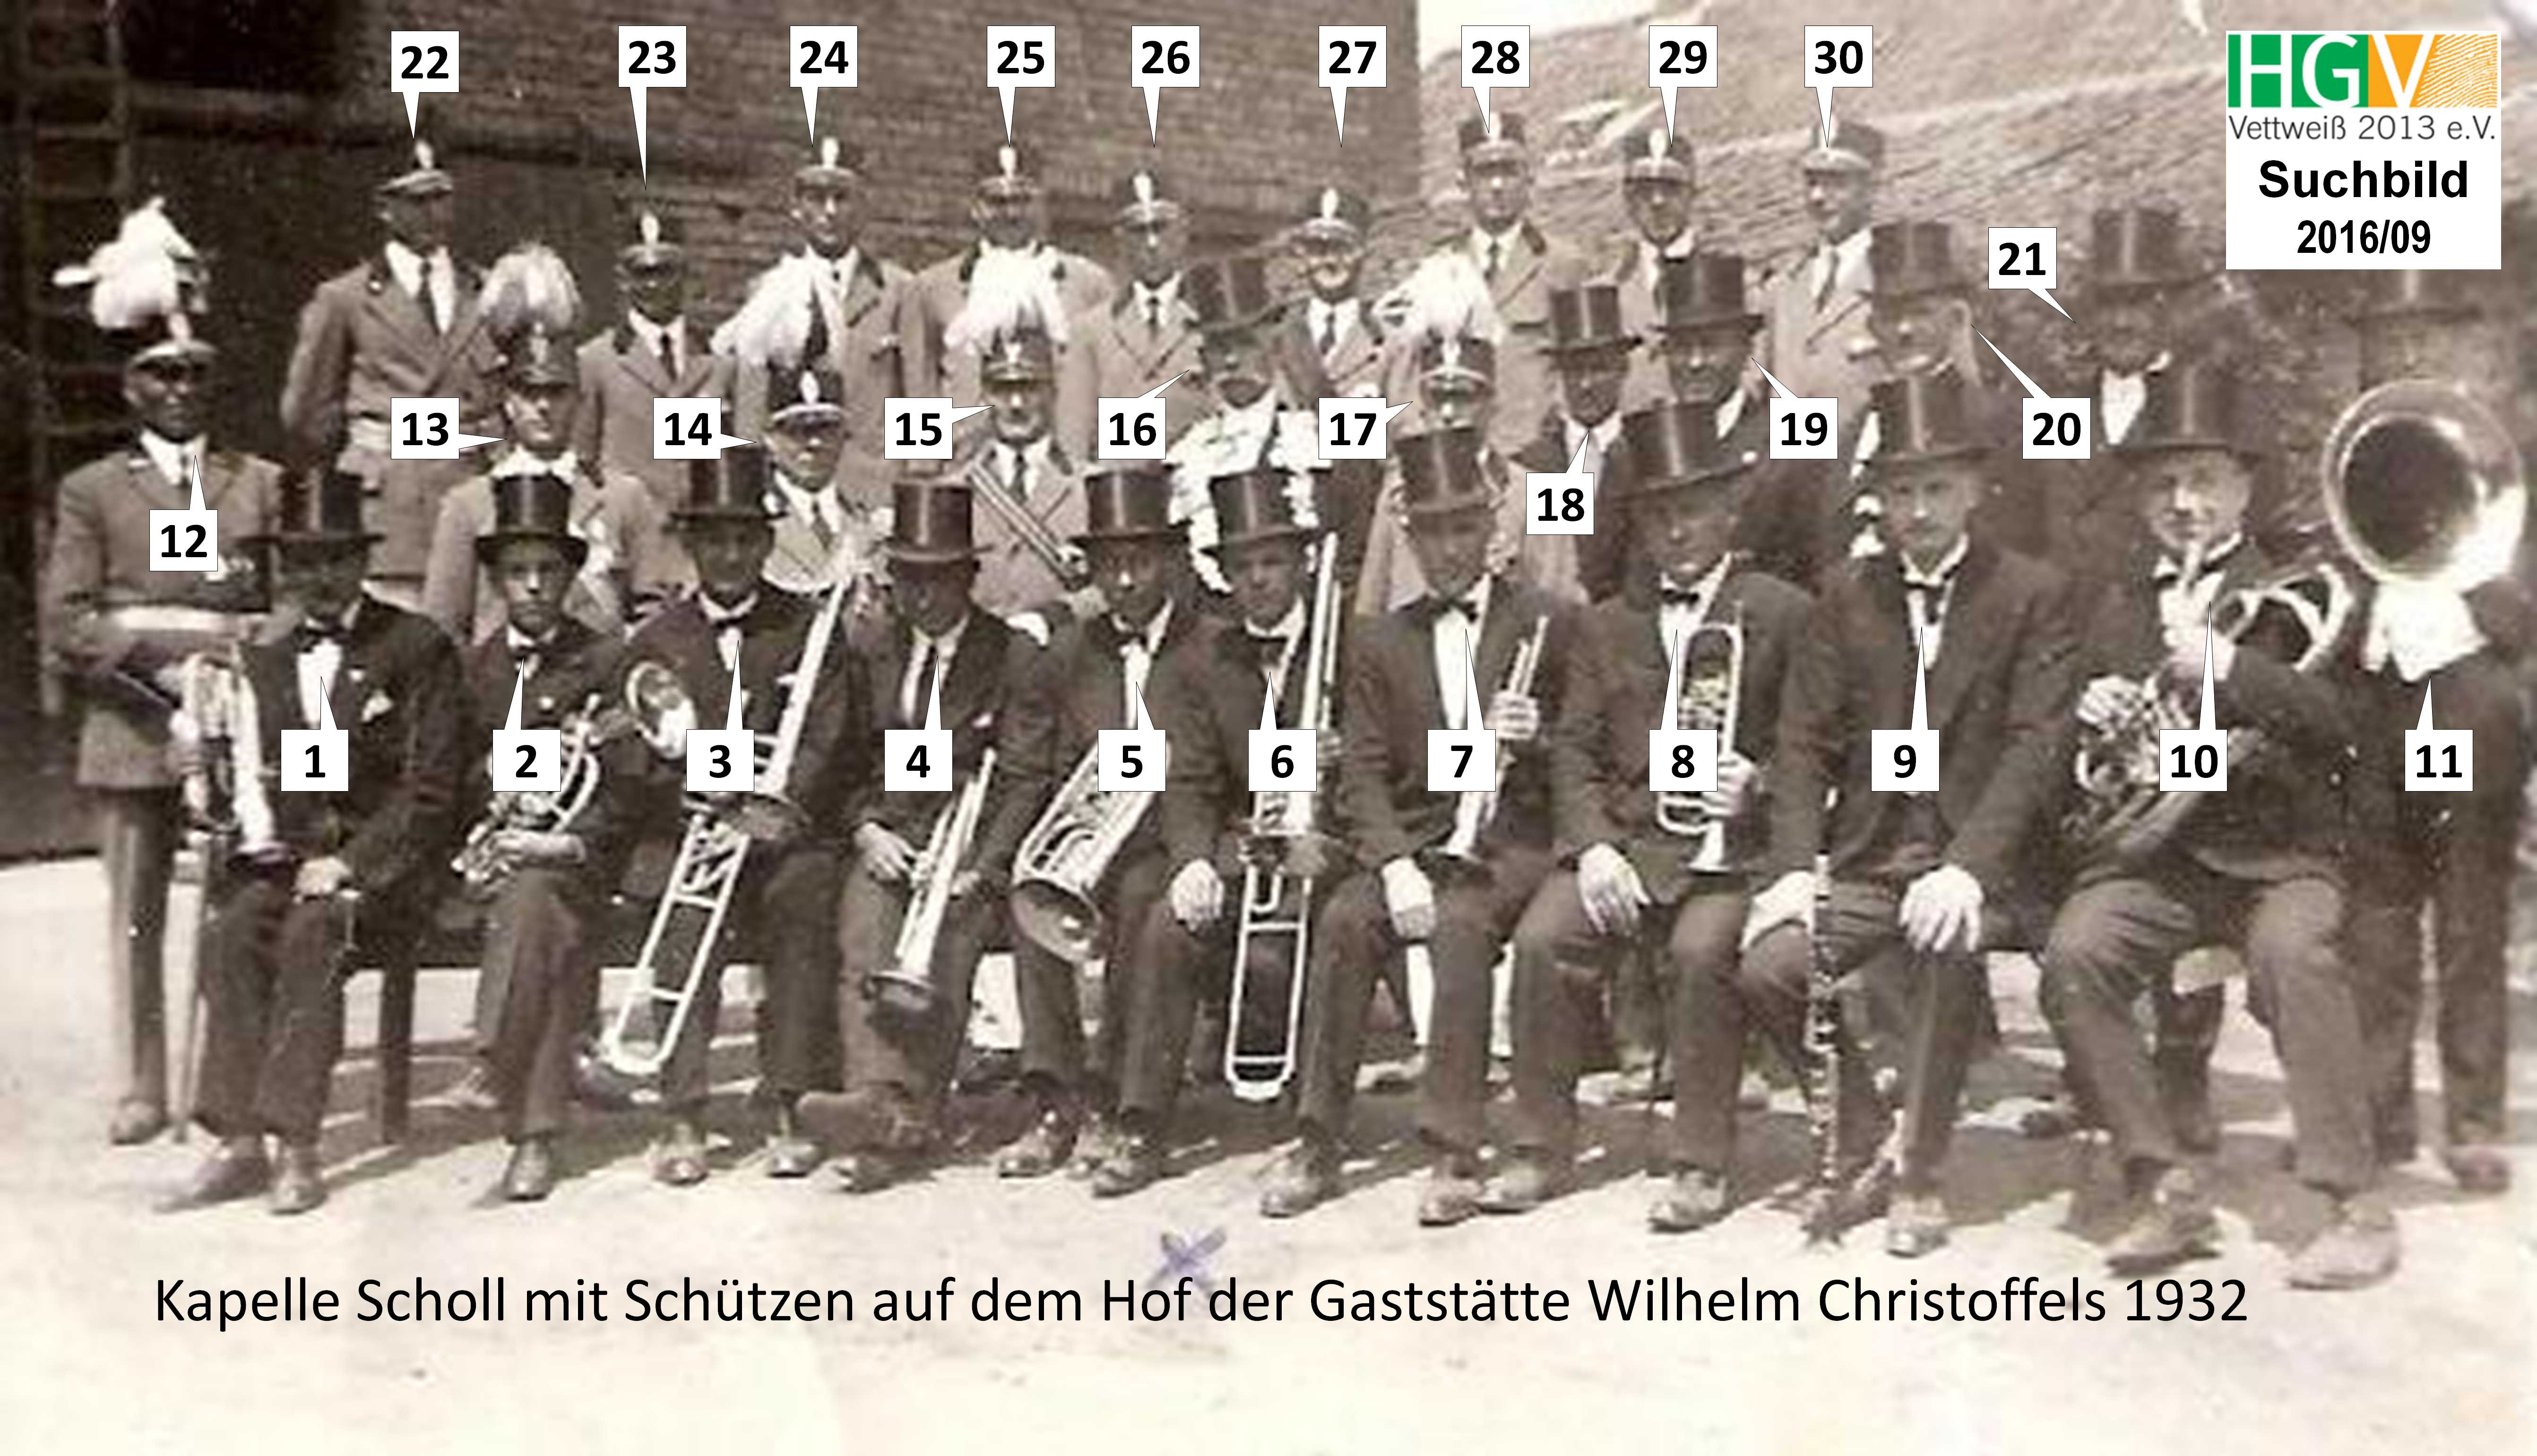 Kapelle Scholl mit Schützen auf dem Hof der Gaststätte Wilhelm Christoffels 1932